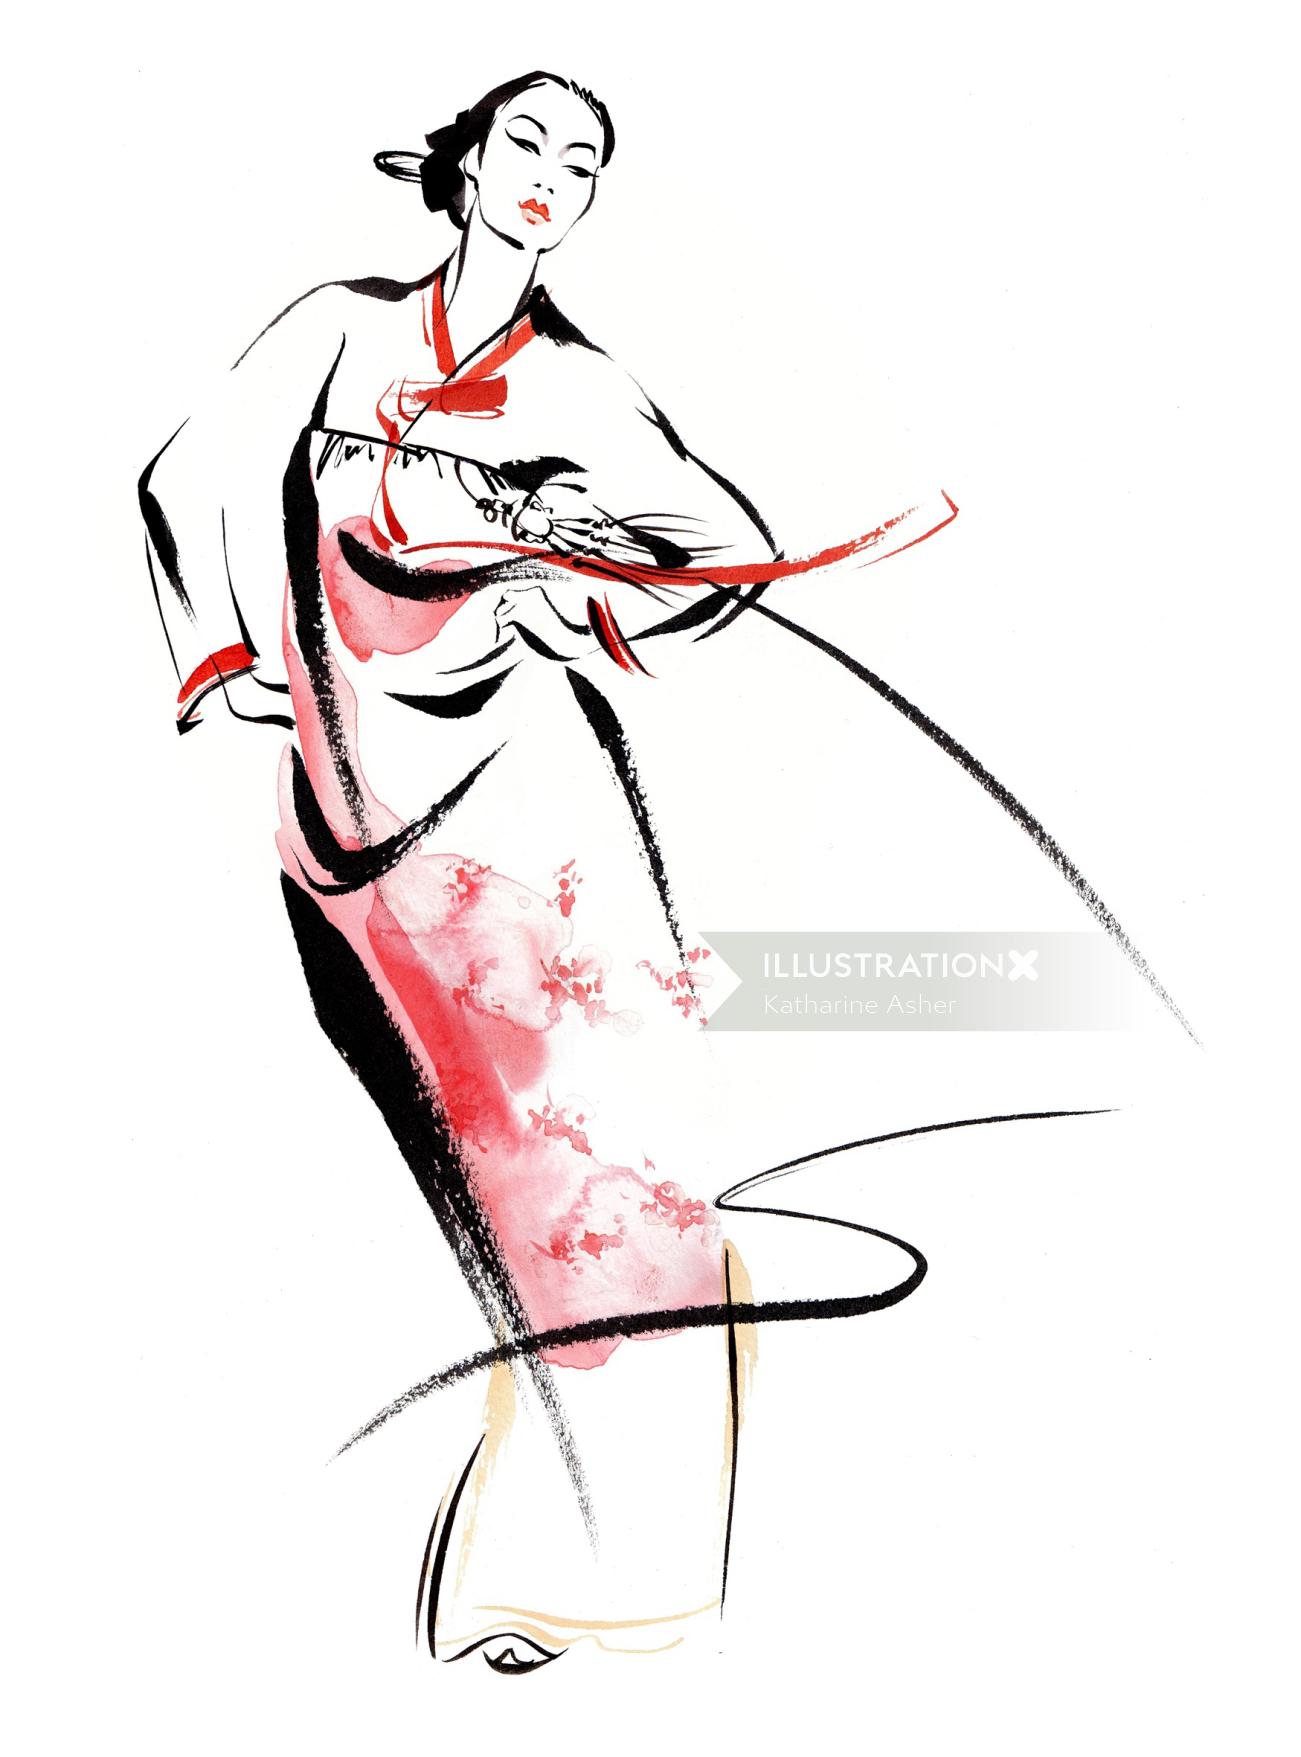 Ilustração de vestido tradicional coreano por Katharine Asher